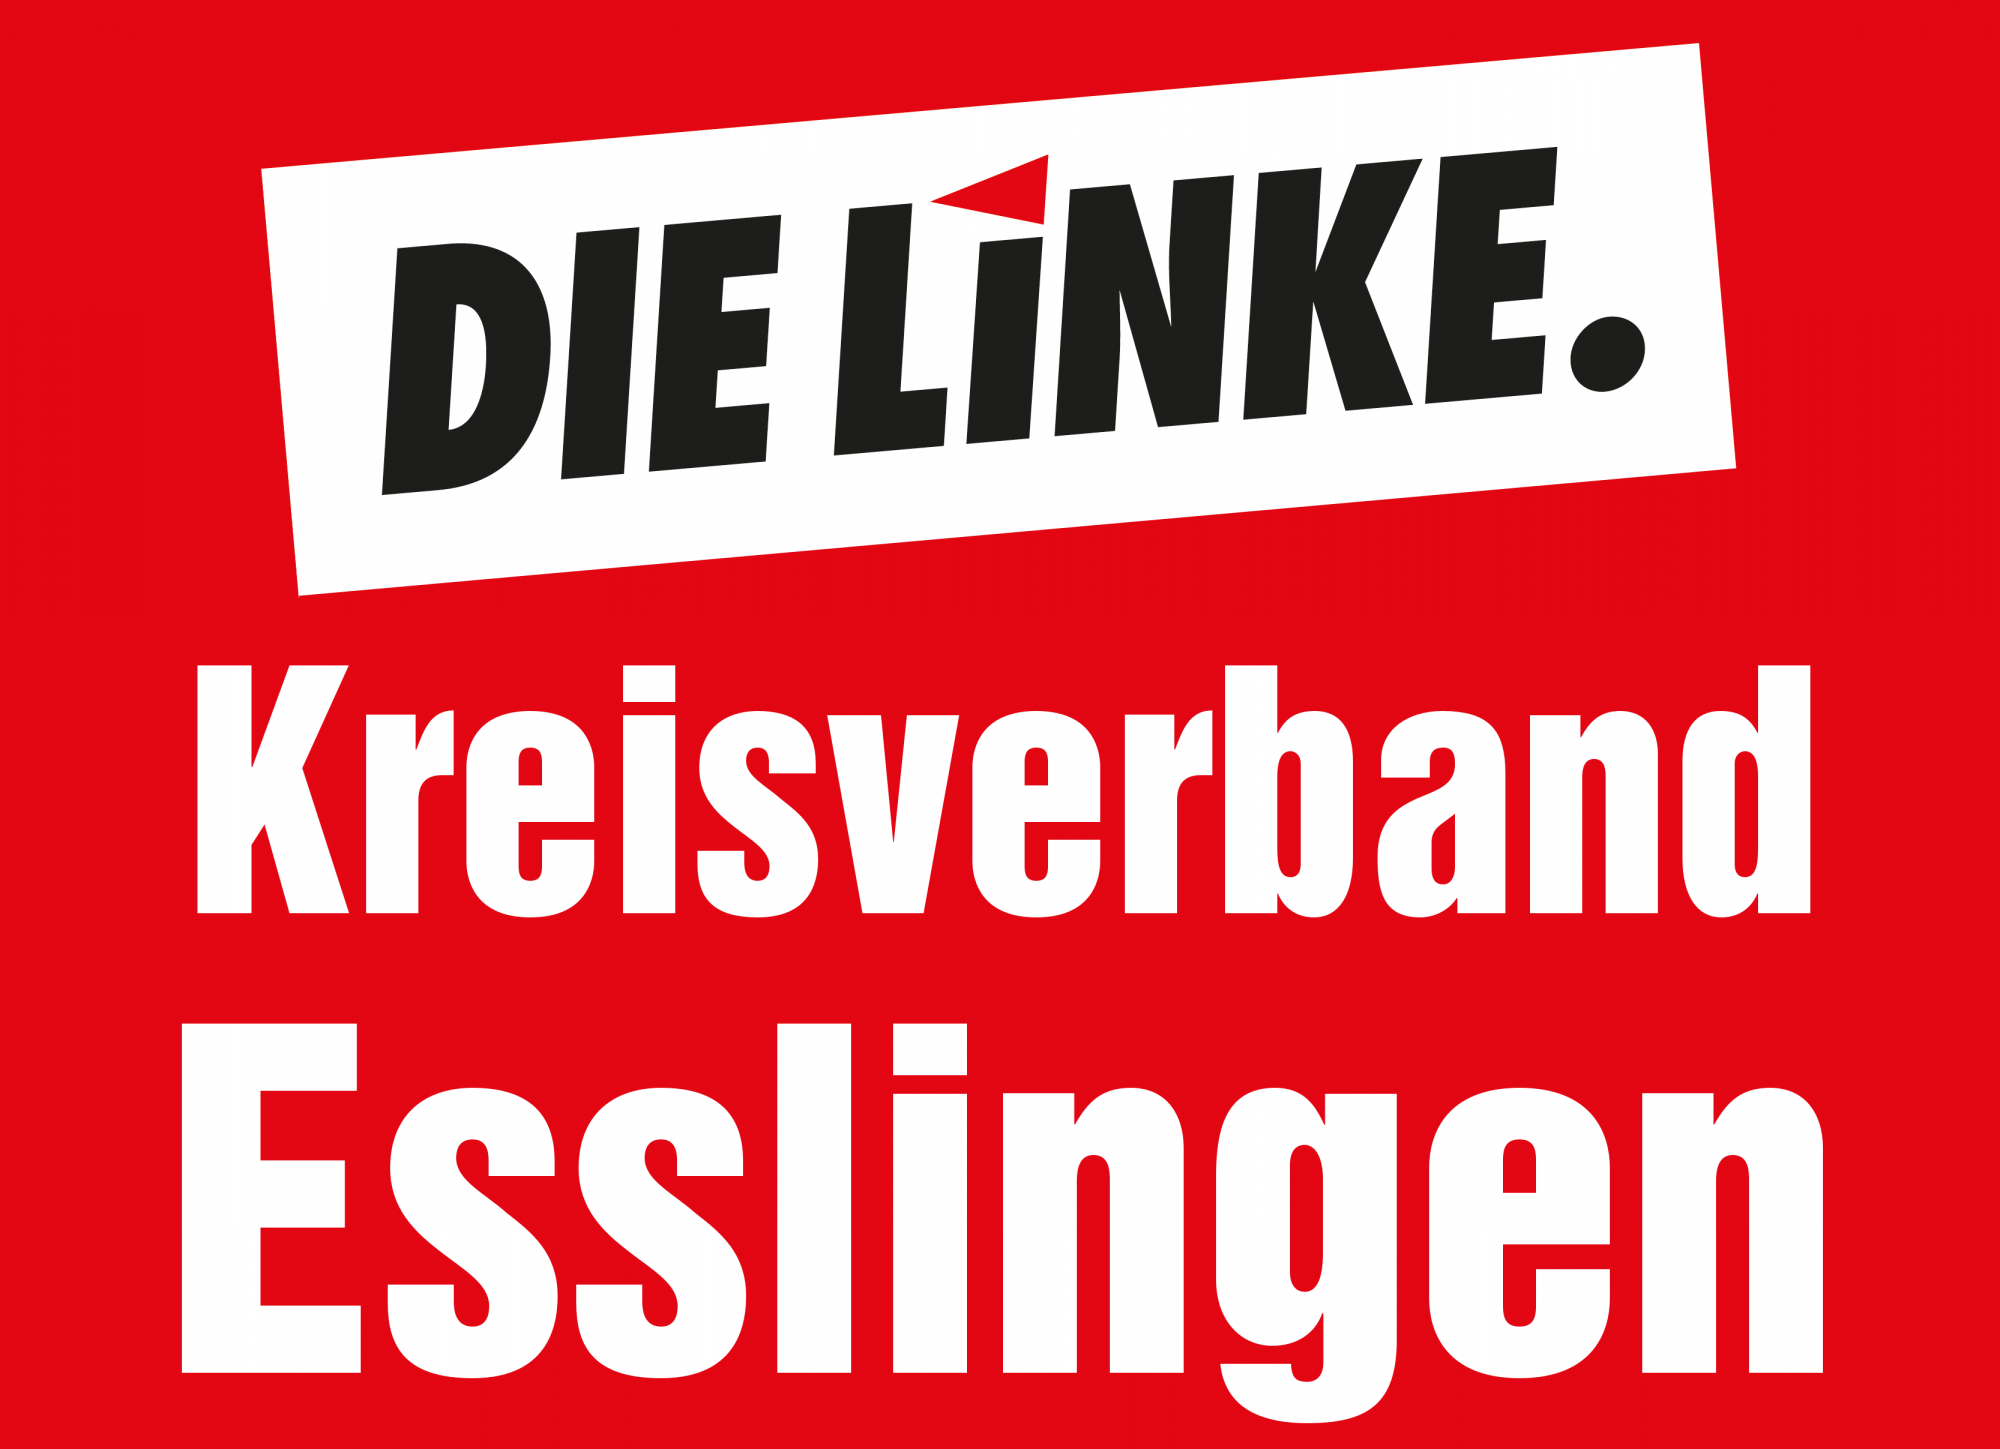 DIE LINKE. Kreisverband Esslingen